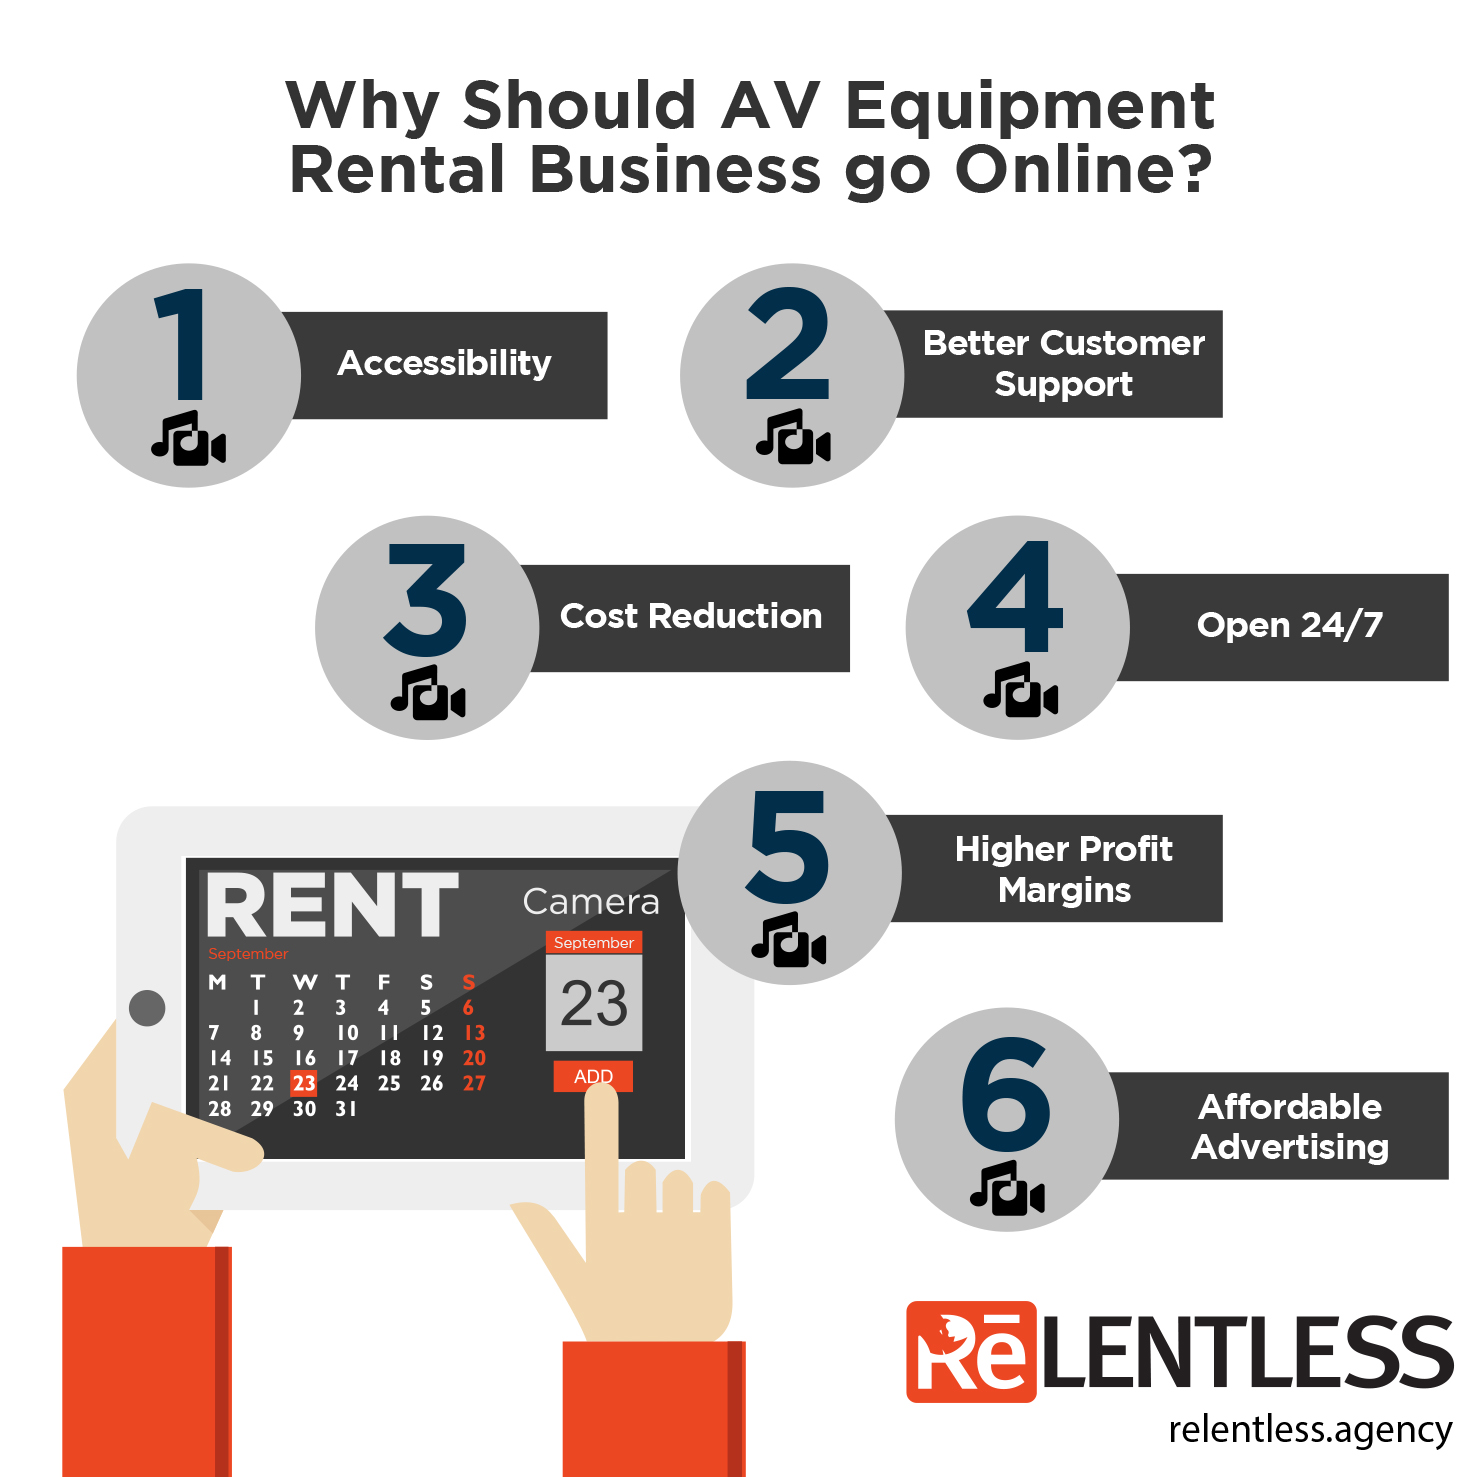 AV Equipment Rental Business Going Online